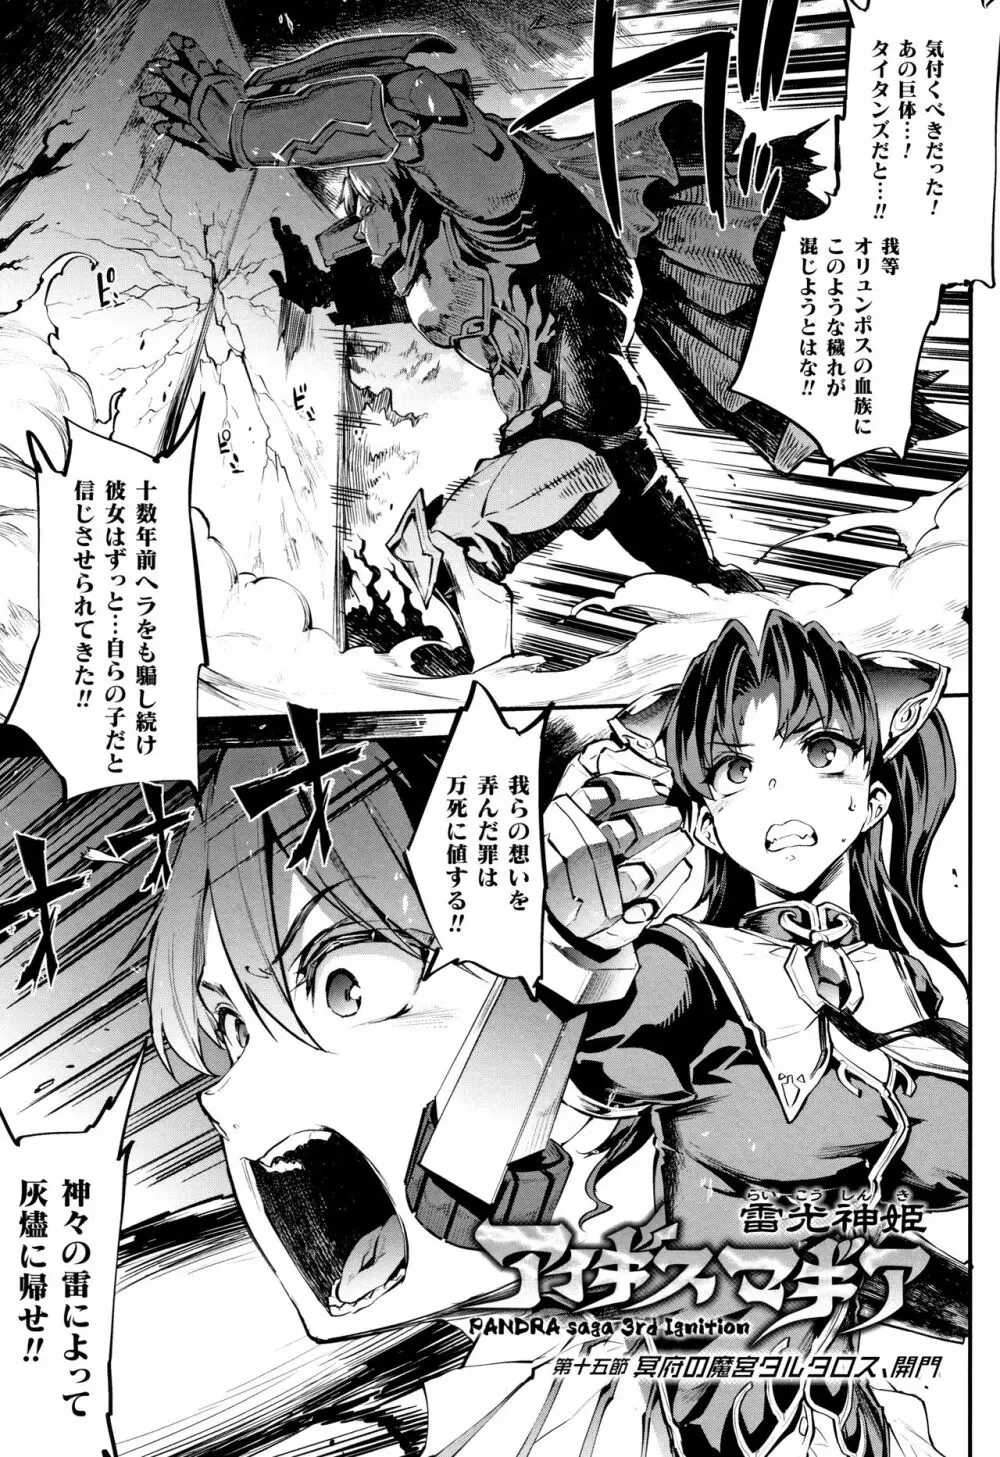 [エレクトさわる] 雷光神姫アイギスマギア II -PANDRA saga 3rd ignition- + 4Pリーフレット 168ページ